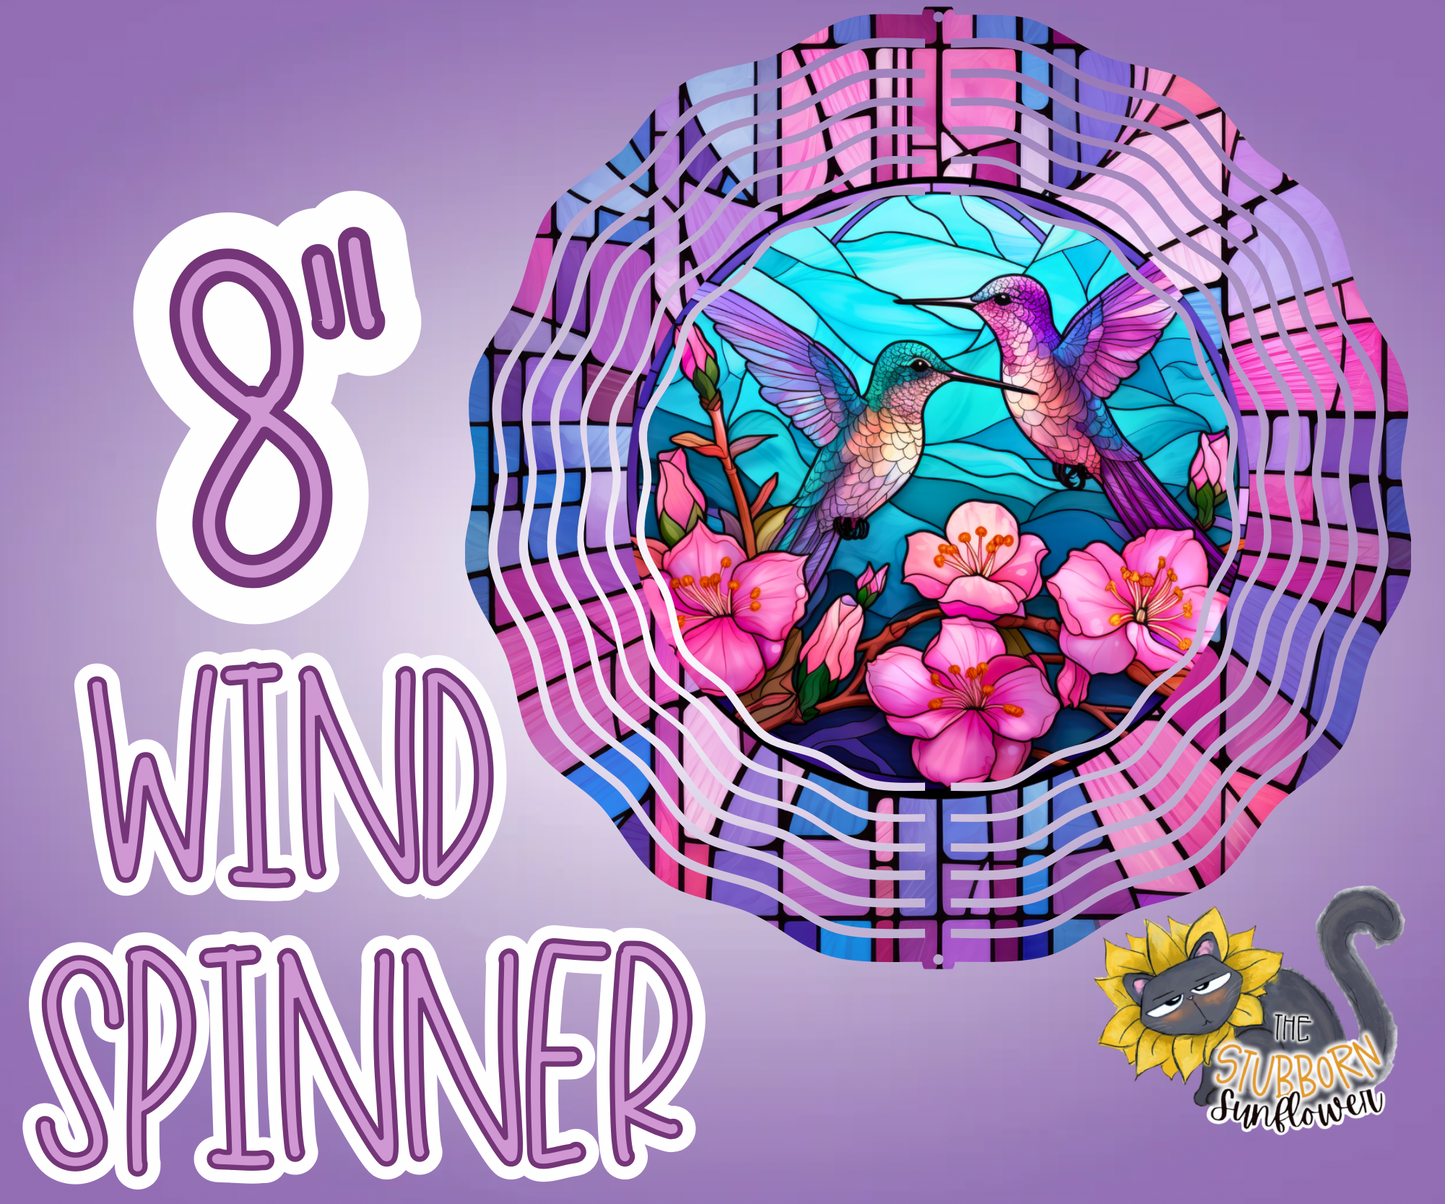 Hummingbird 8” Wind Spinner